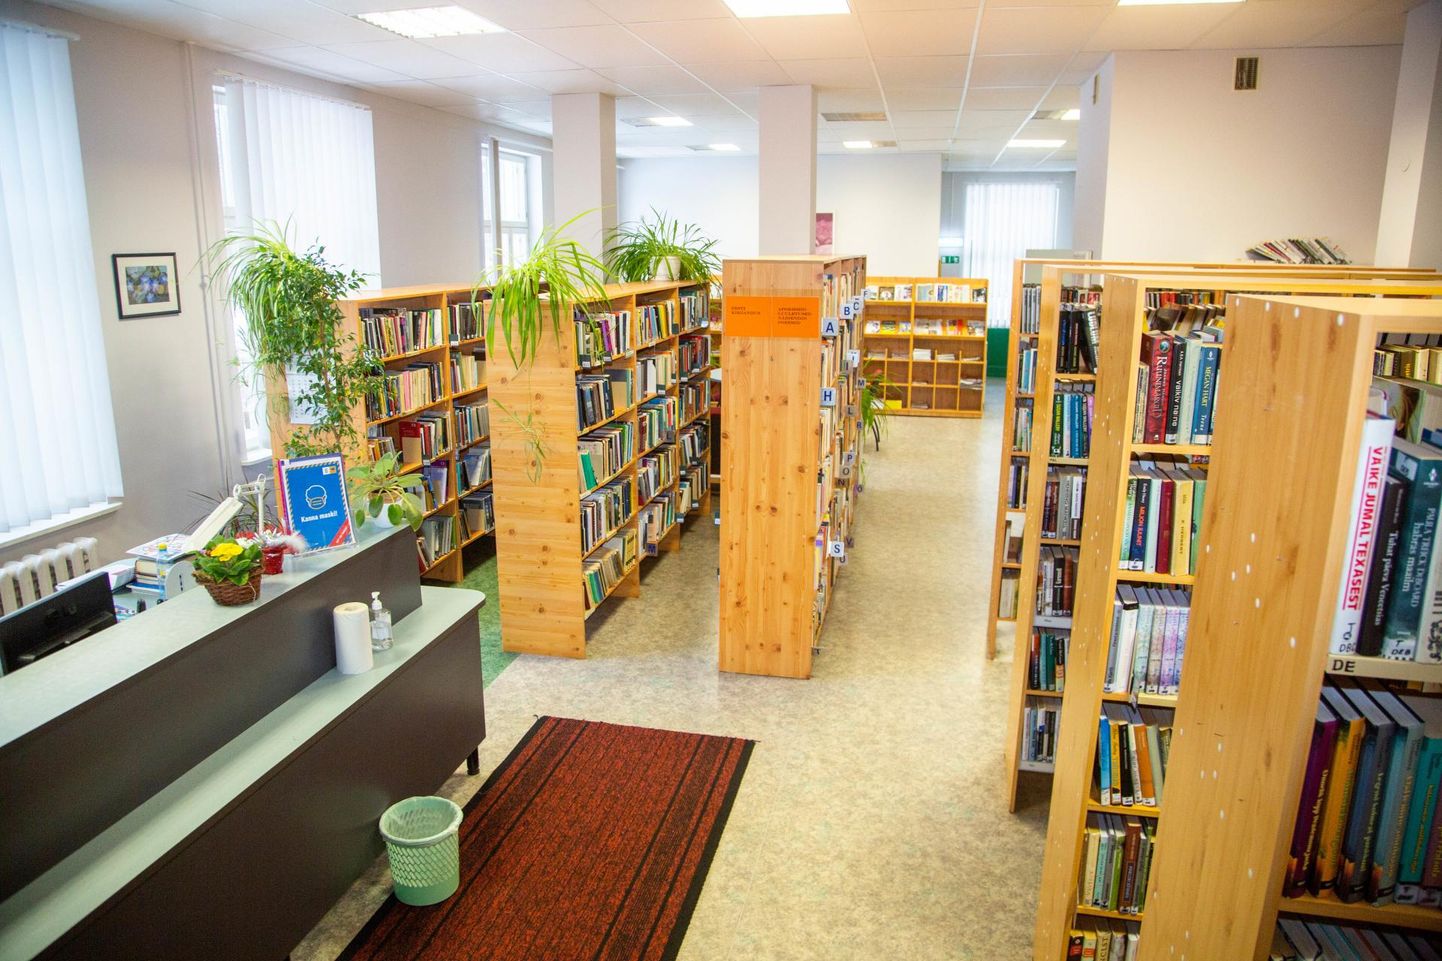 Lasteraamatukogu kolib Tõrva linnaraamatukogu osasse, mis on pildil vasakus servas. Ilmselt tulevad riiulitele peale kõrgendused.